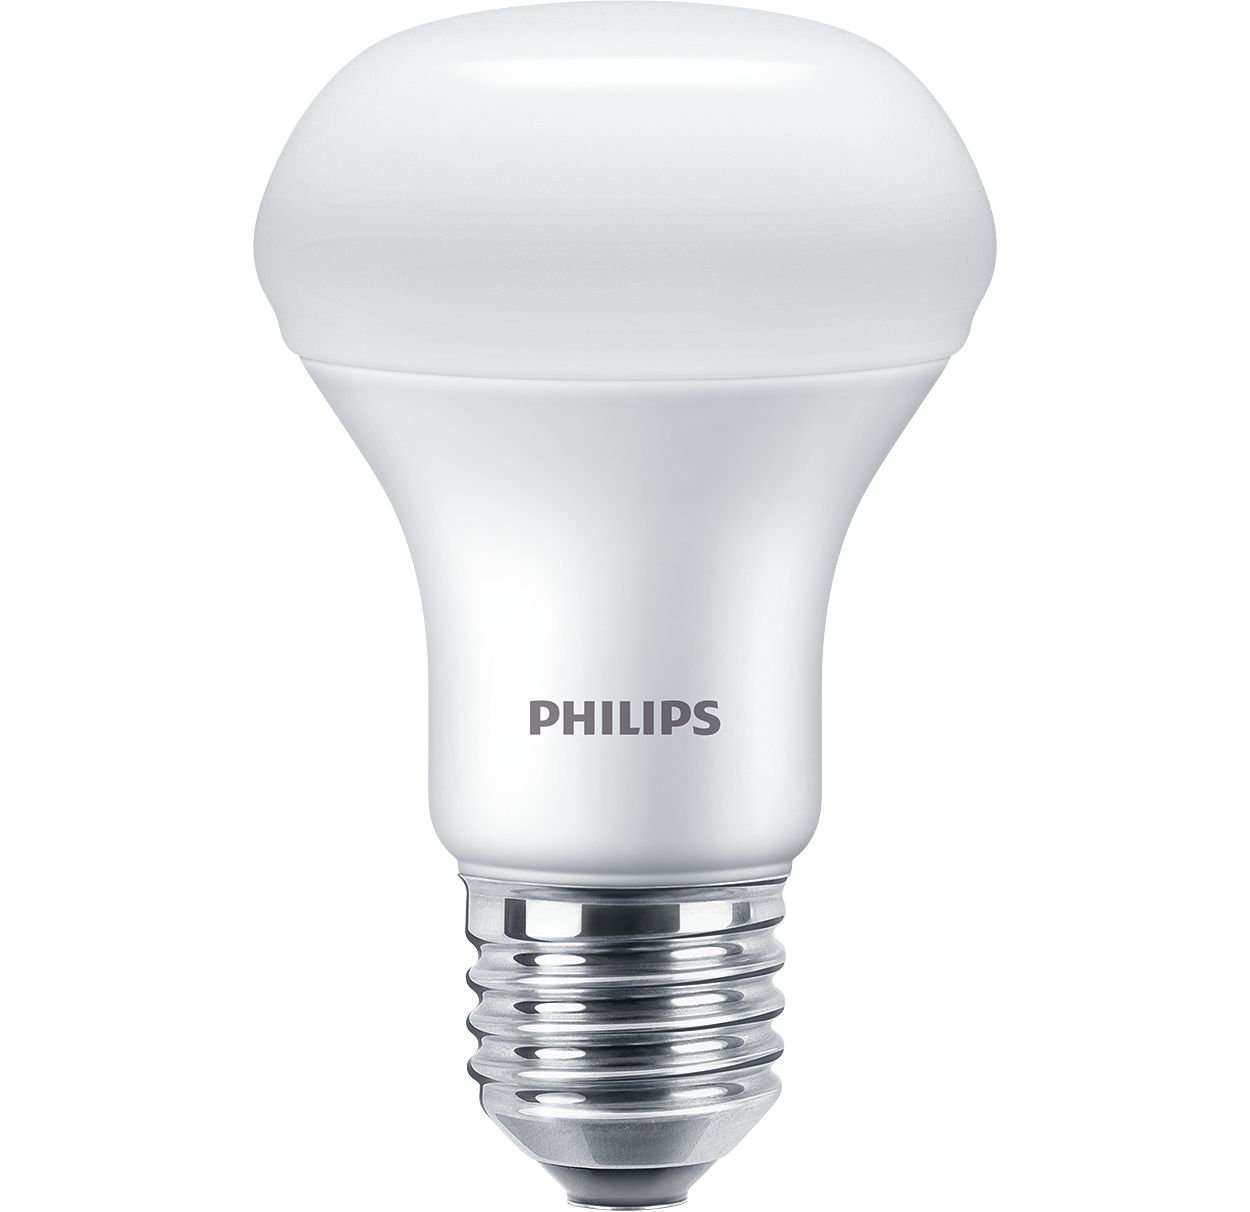 ESS LEDspot 9W 980lm E27 R63 929002965887 | Philips lighting